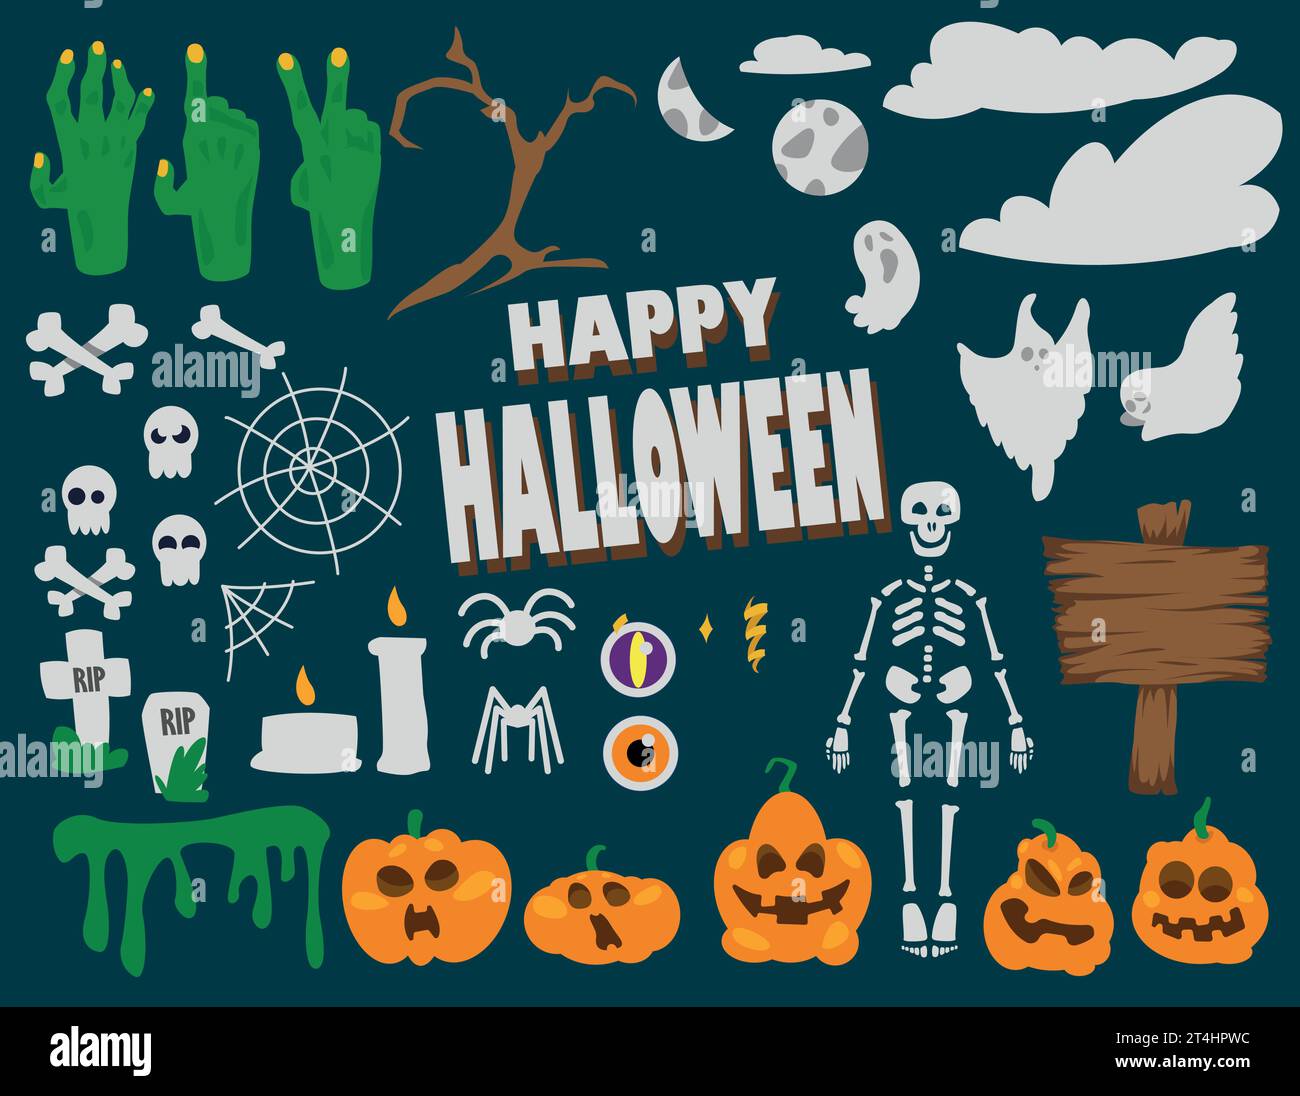 halloween flaches Design, Elemente Schädel, Skelett, Wolken, Zombie Hände, halloween-Elemente Stock Vektor